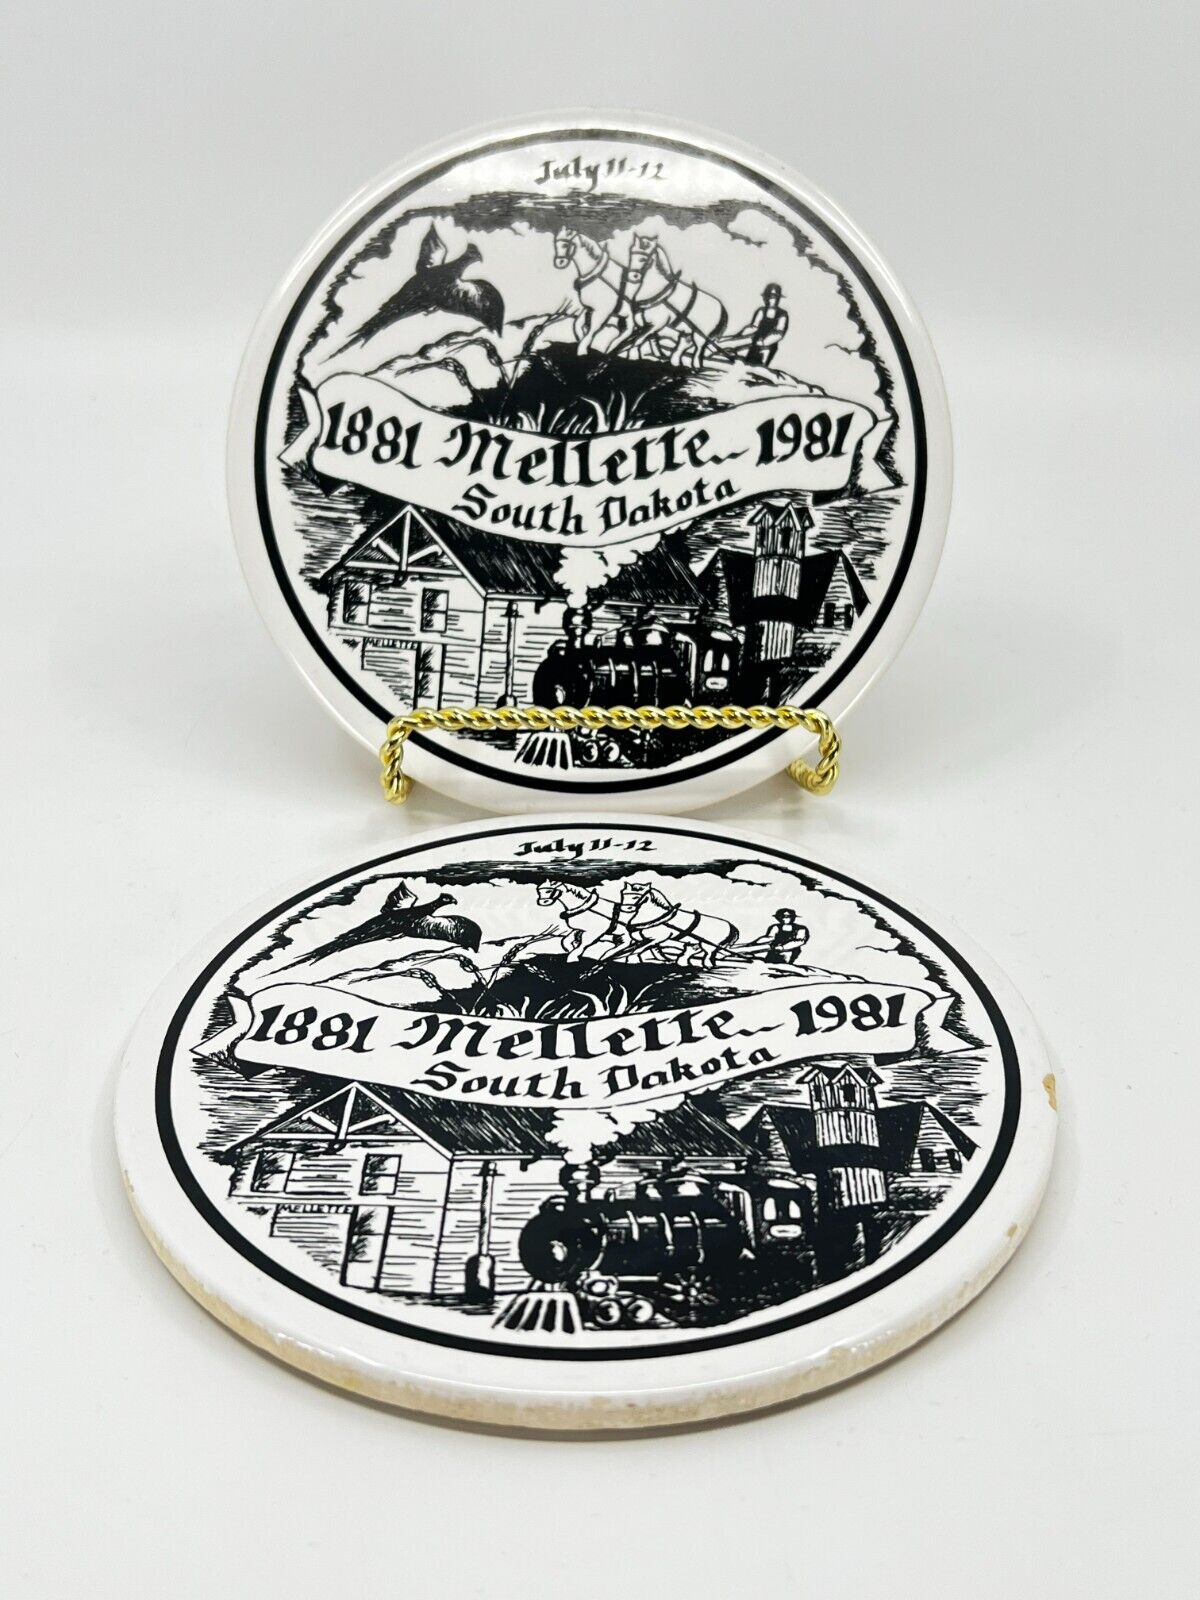 2 VTG Matching Trivets celebrating Mellette, South Dakota 1881-1981 Hot Plate SD